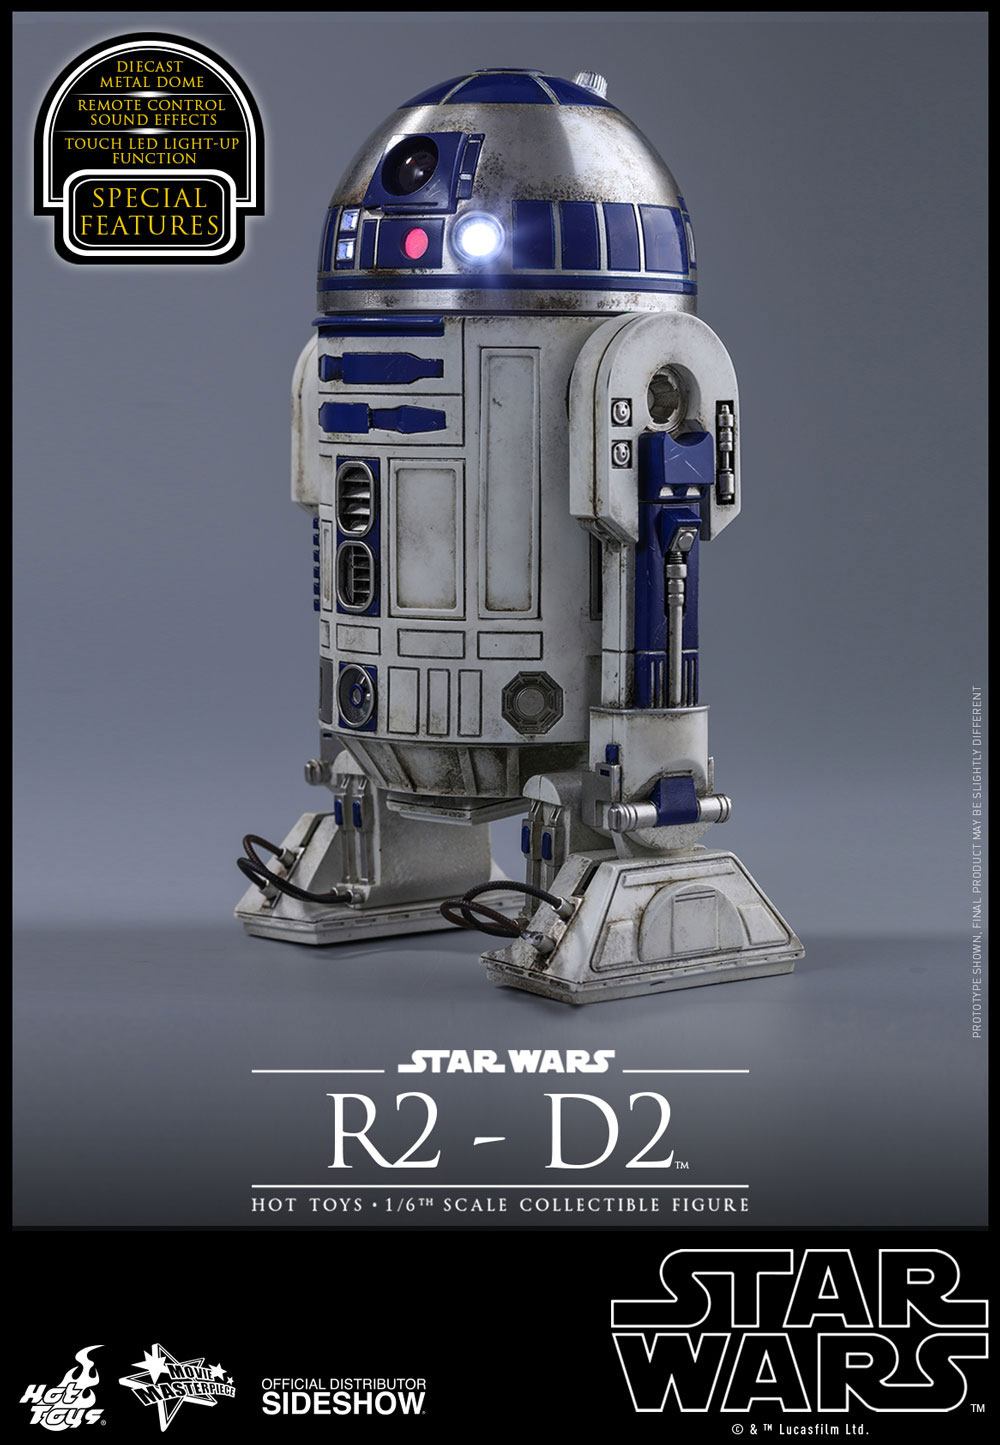 17700円 うのにもお得な サイドショウ スターウォーズ R2-D2 未塗装 プロトタイプ